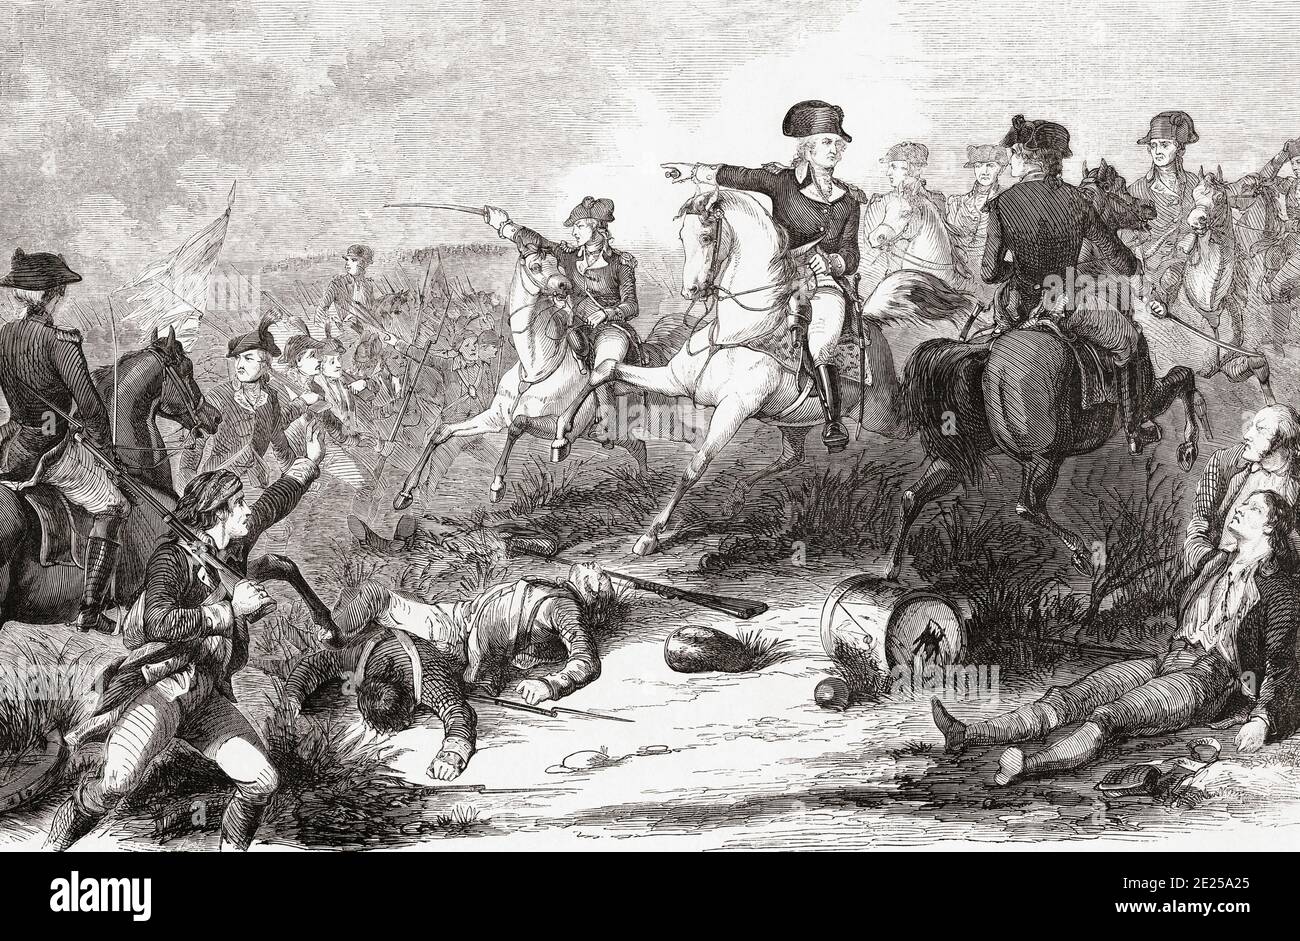 Die Schlacht von Monmouth oder die Schlacht von Monmouth Court House, 28. Juni 1778 während des amerikanischen Revolutionskrieges. Auf dem Bild versammlungen George Washington seine Truppen der Kontinentalarmee. Nach einem Stich eines unbekannten Künstlers aus dem 19. Jahrhundert. Stockfoto